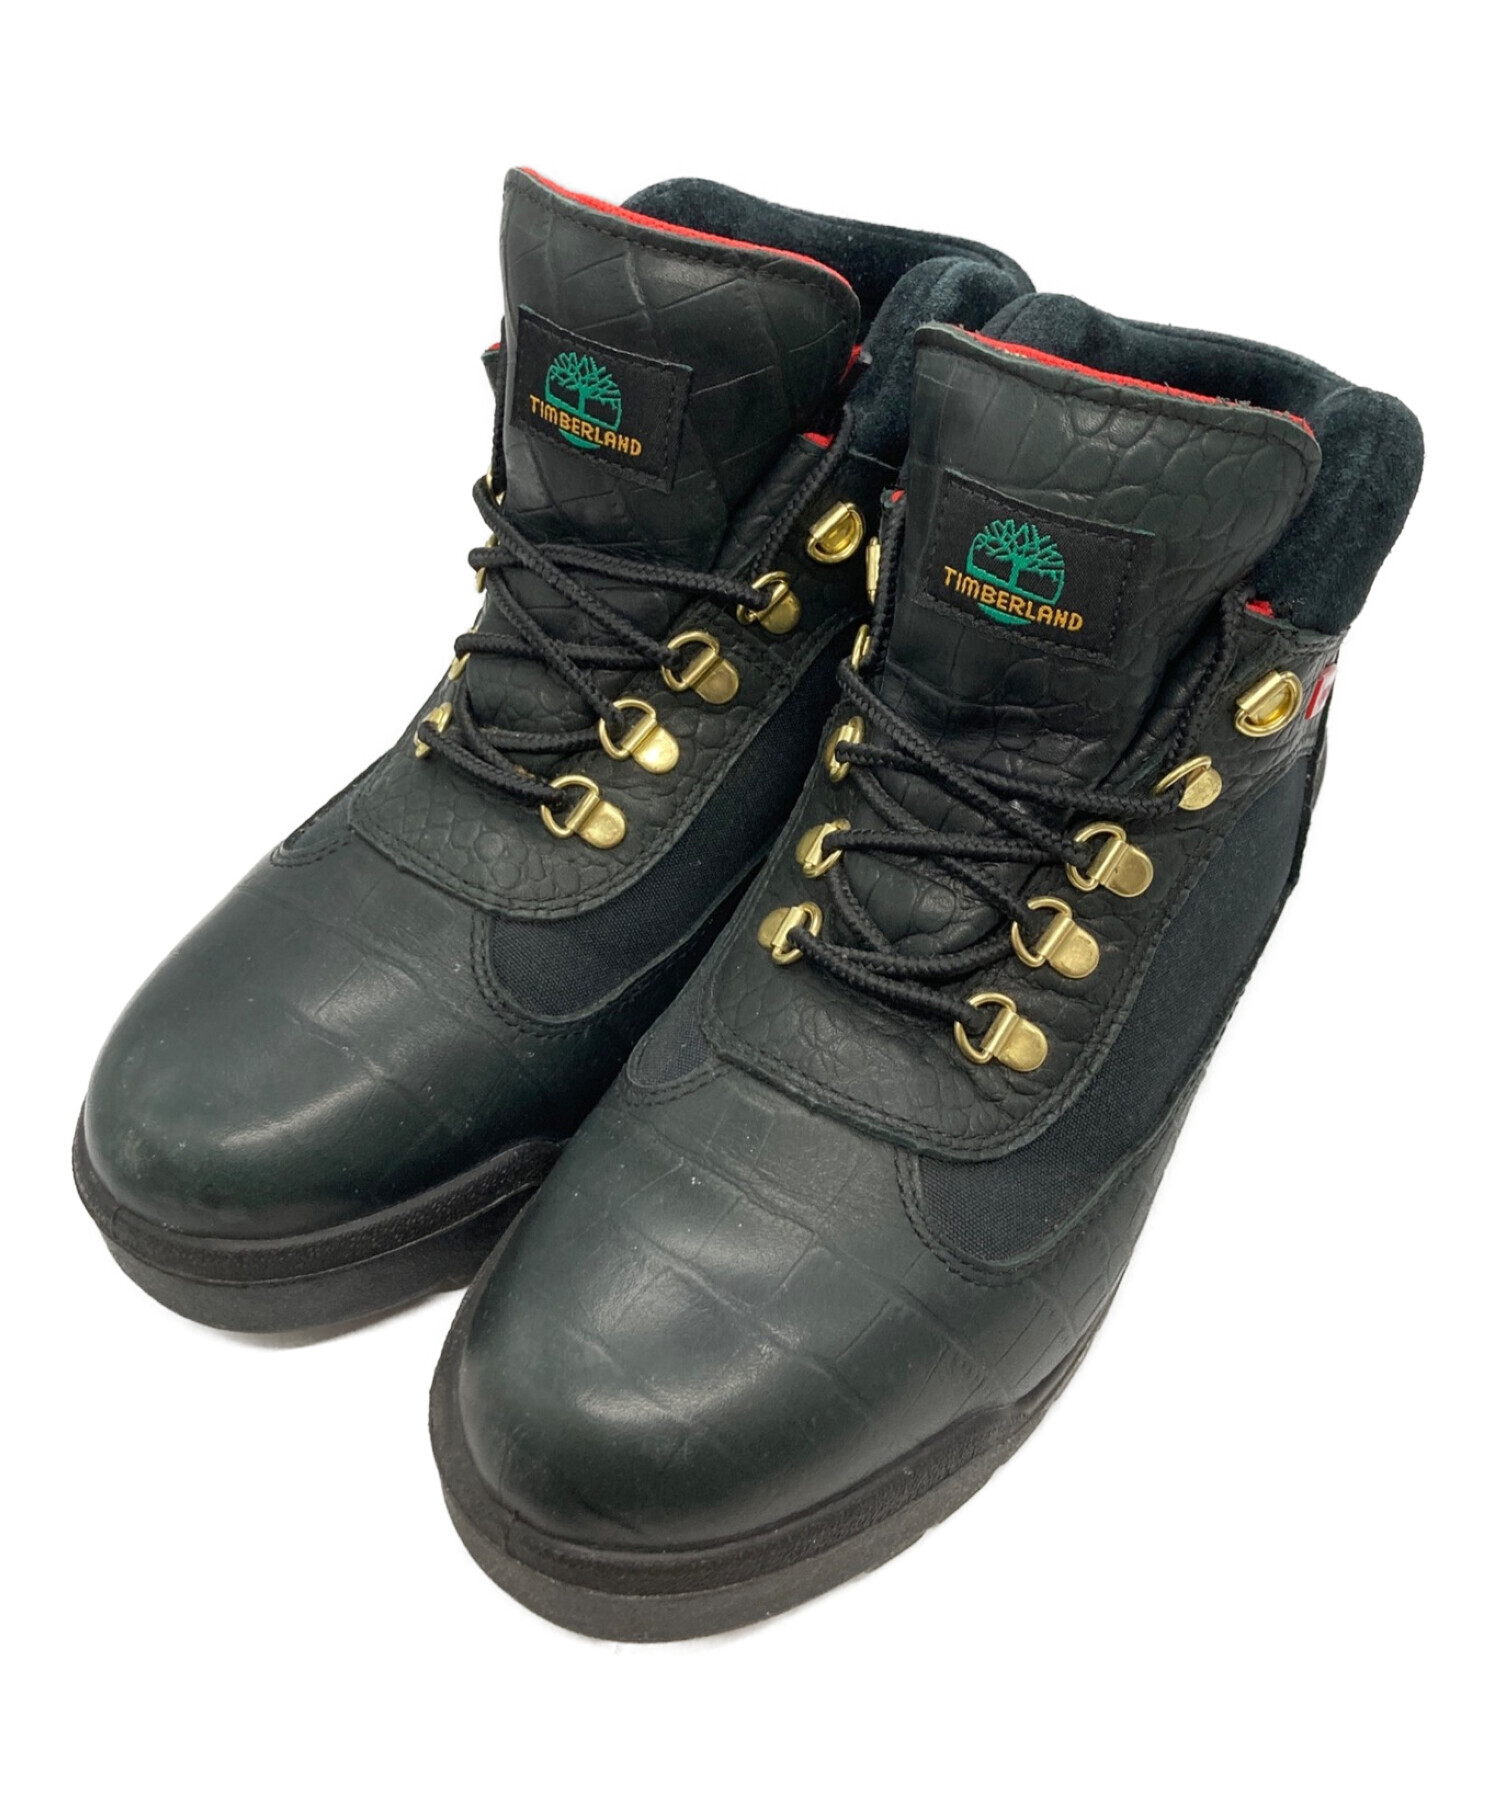 Timberland (ティンバーランド) SUPREME (シュプリーム) Field Boots ブラック サイズ:28cm